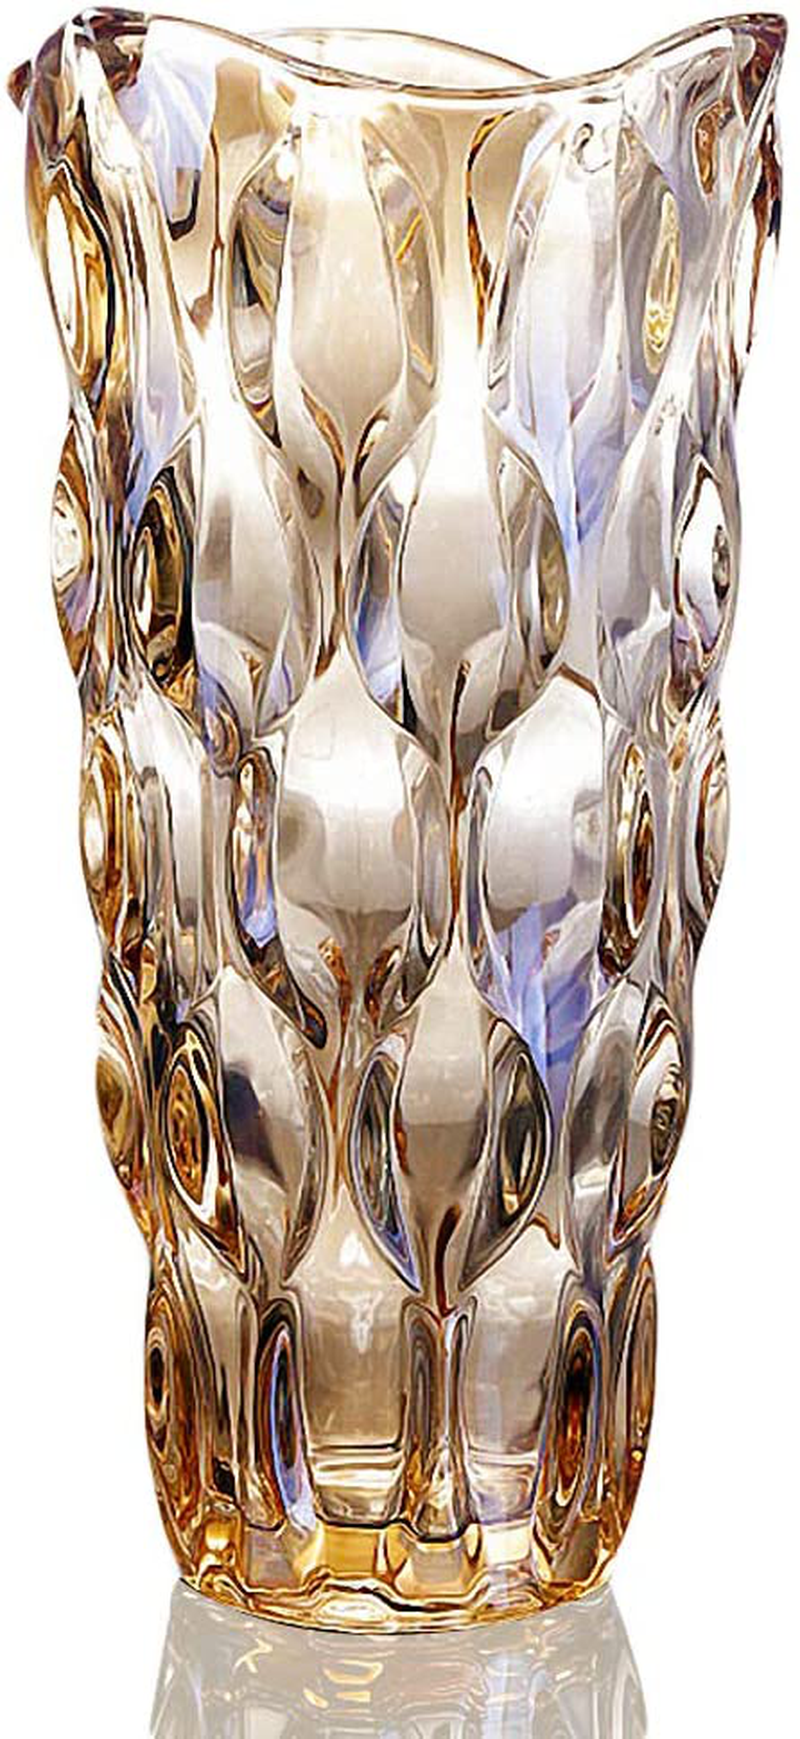 Flower Vase for Decor Glass Gold Vase 11.8" Tall